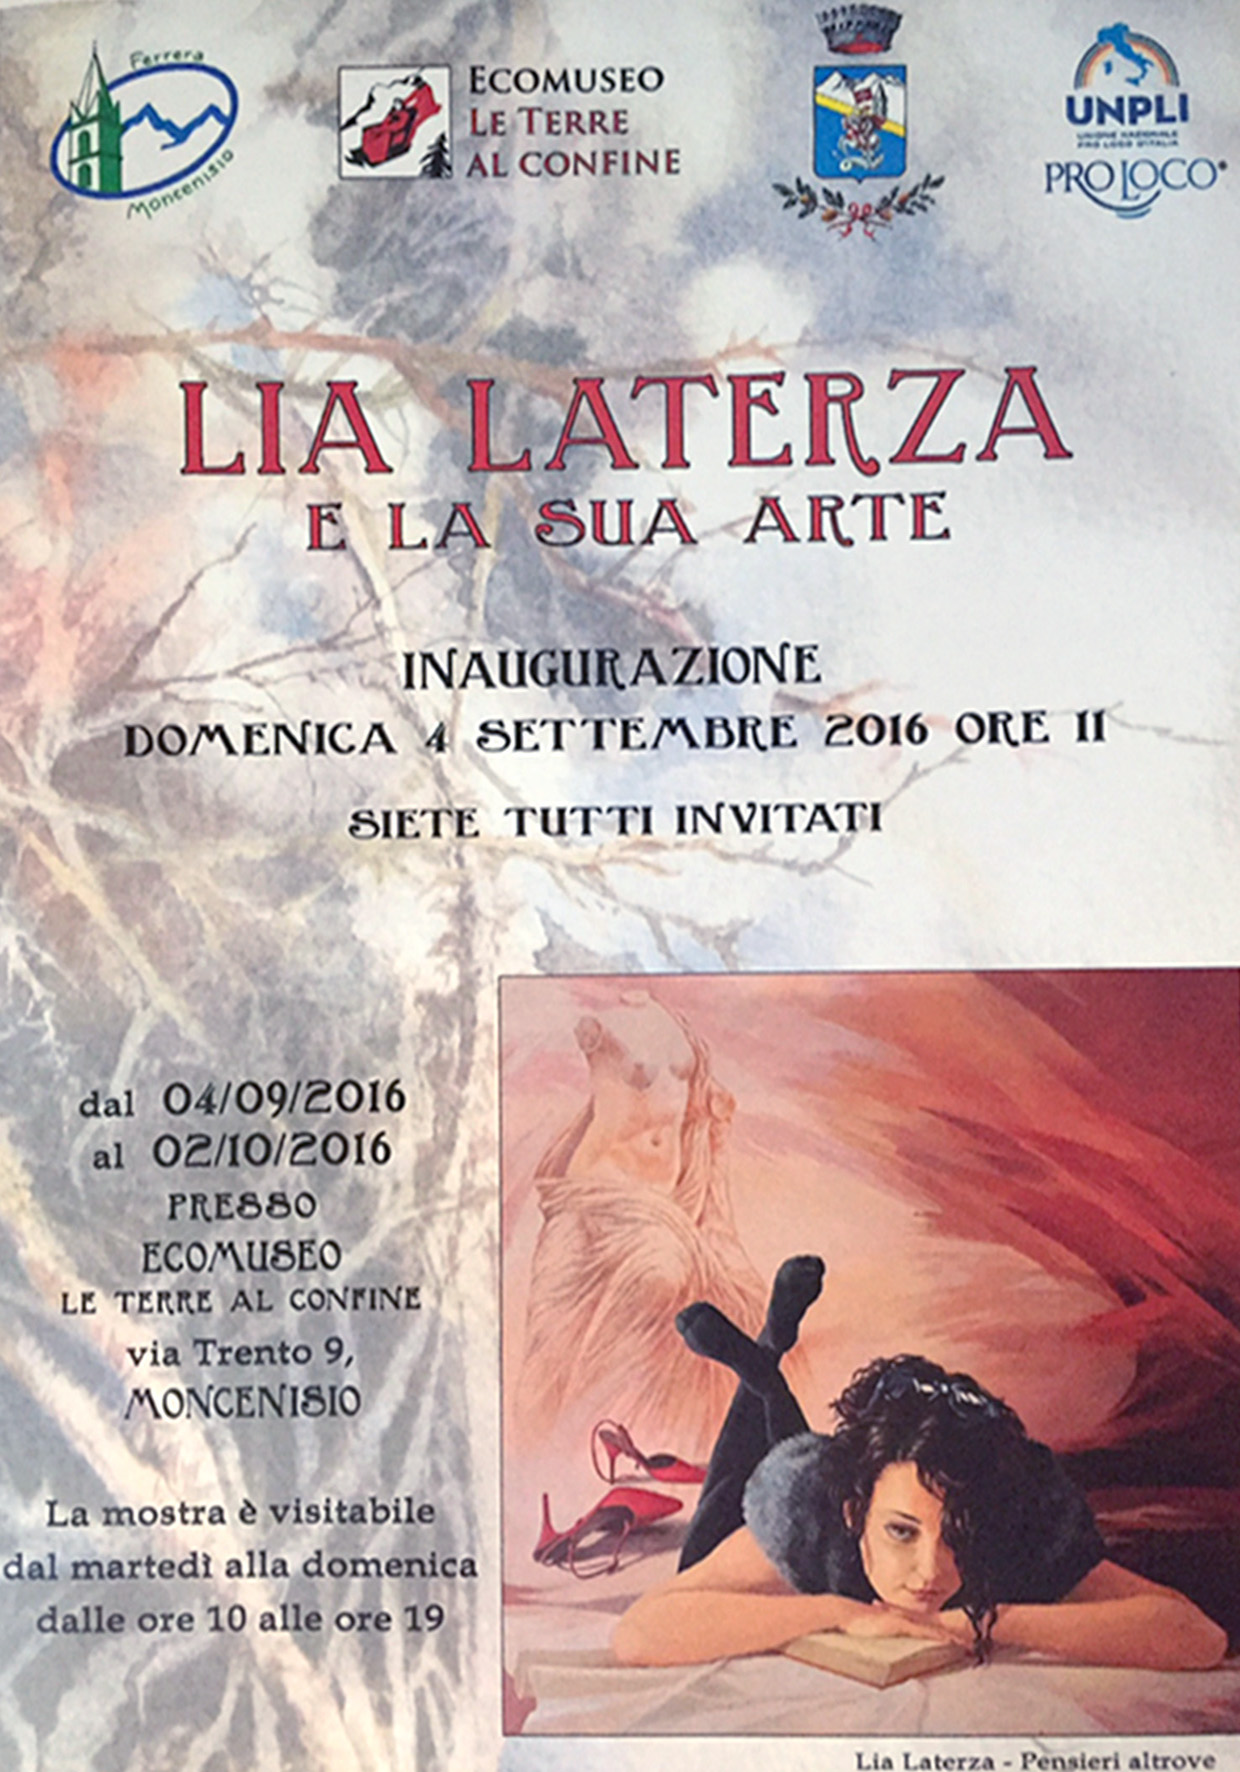 Lia Laterza e la sua arte, all'Ecomuseo 'Terre al Confine' di Moncenisio (To) © L.Laterza/ETaC